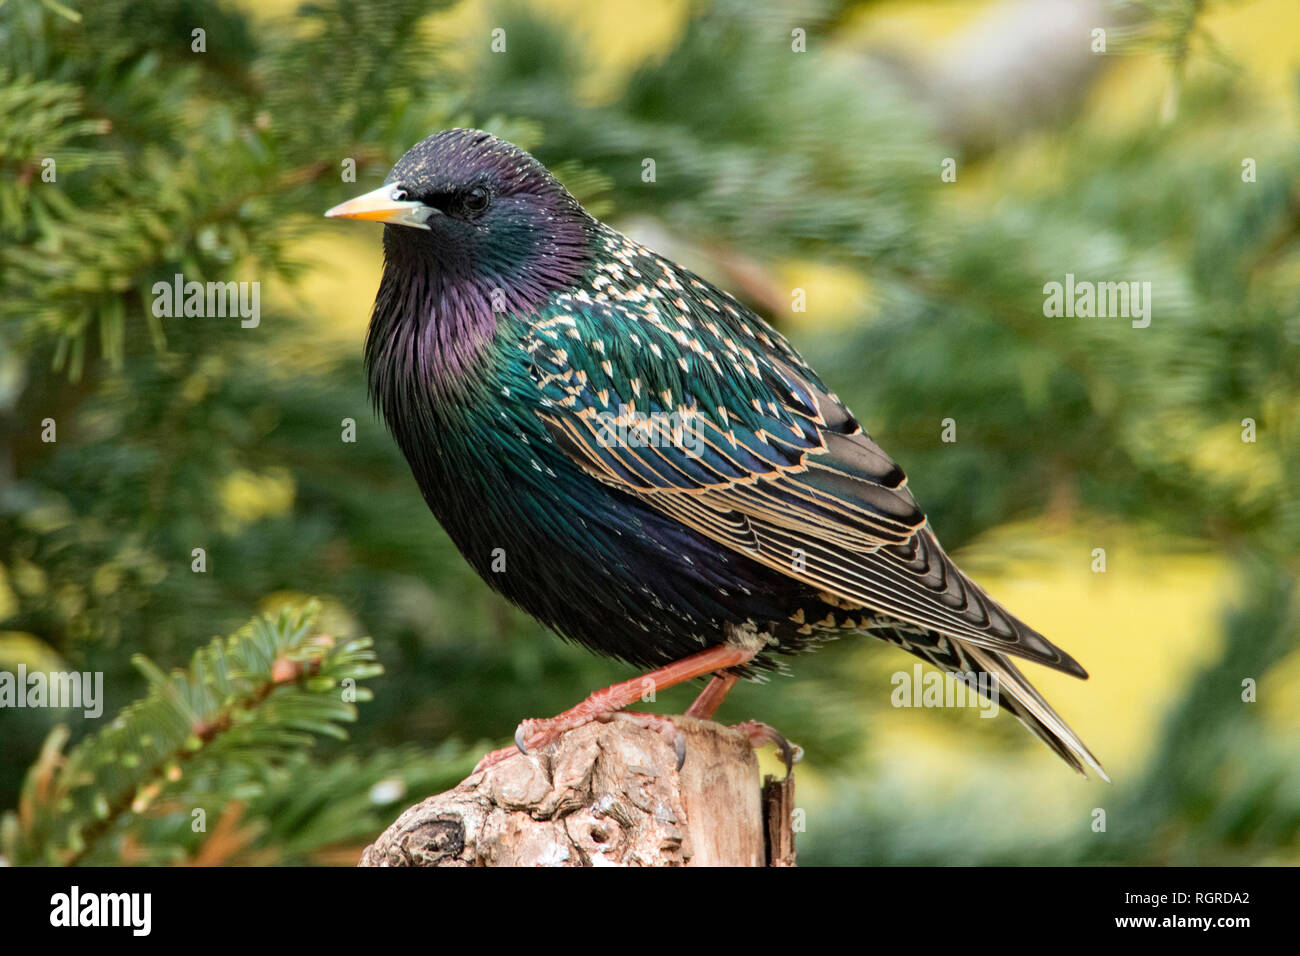 common starling, (Sturnus vulgaris) Stock Photo